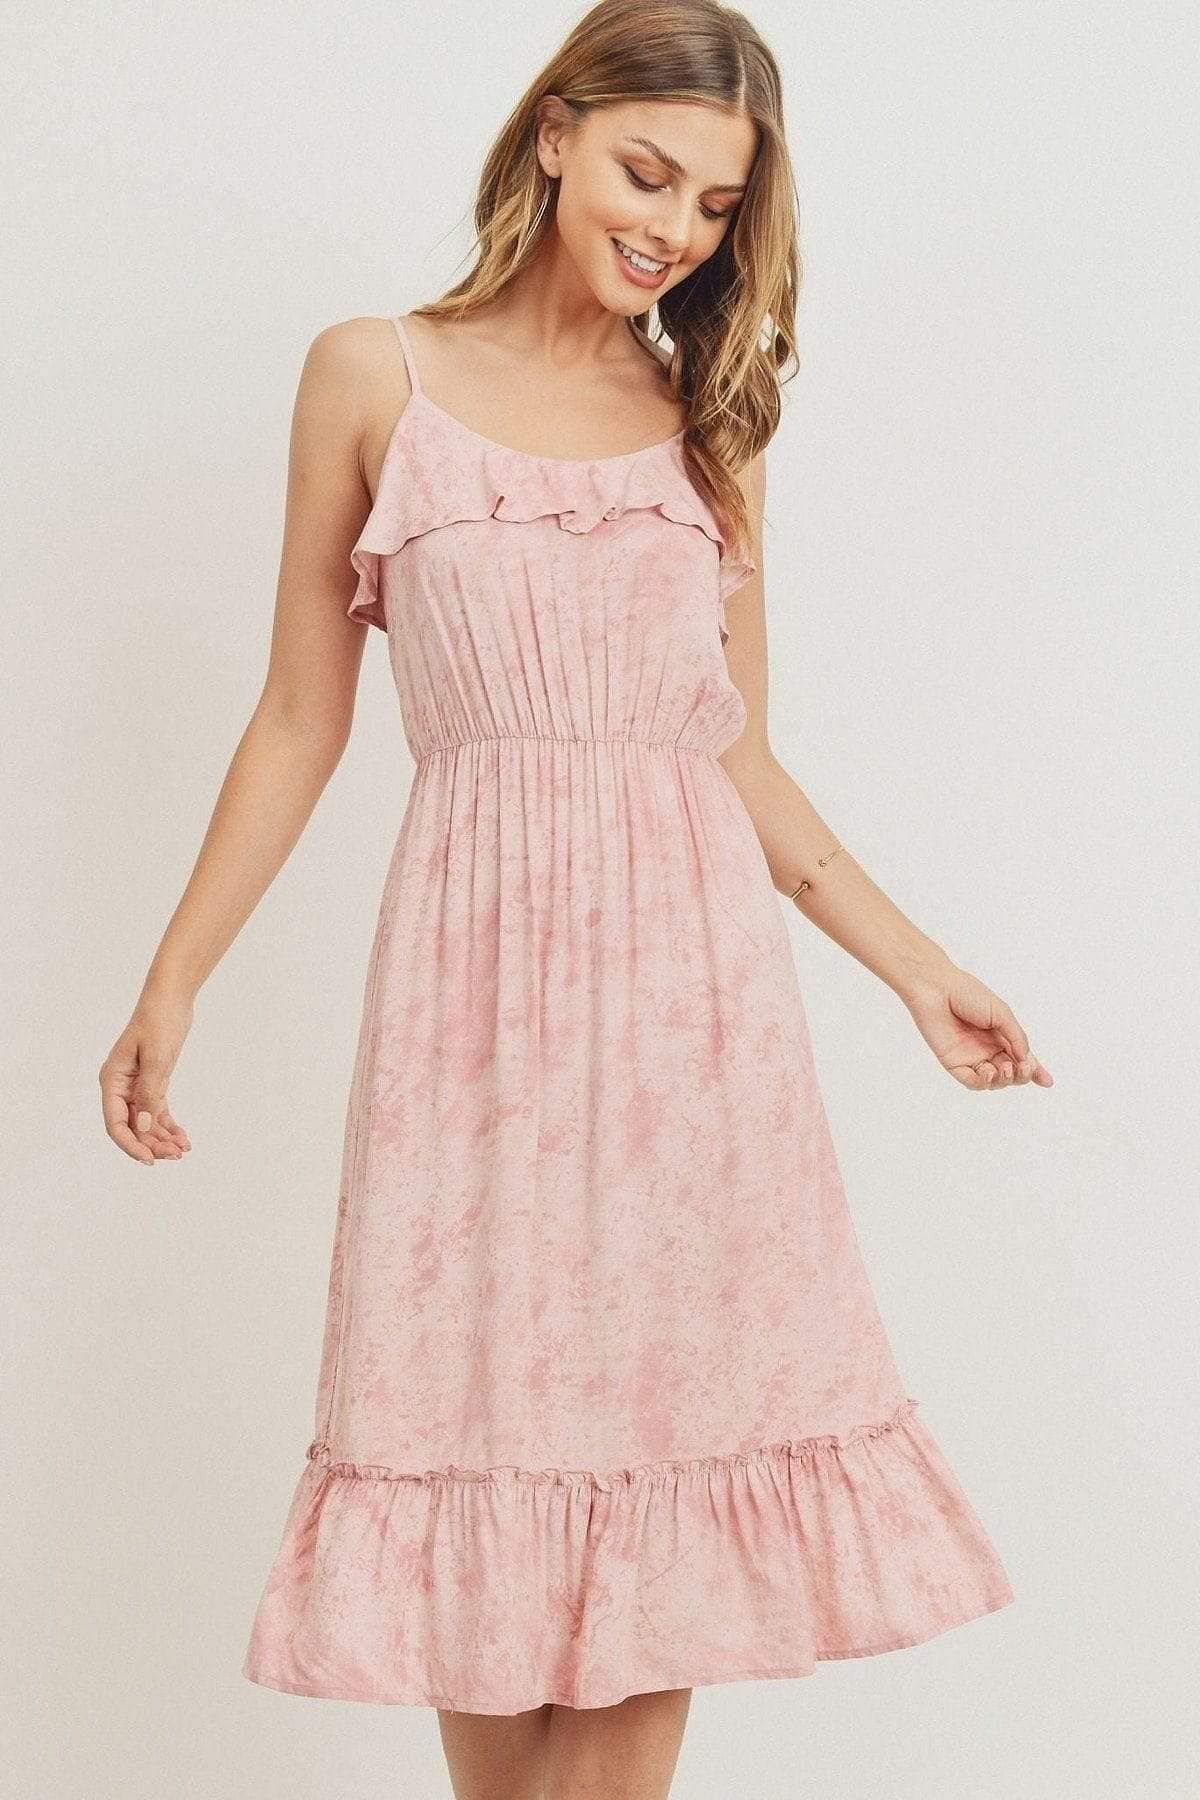 Pink Spaghetti Strap Ruffle Midi Dress - Shopping Therapy, LLC dress